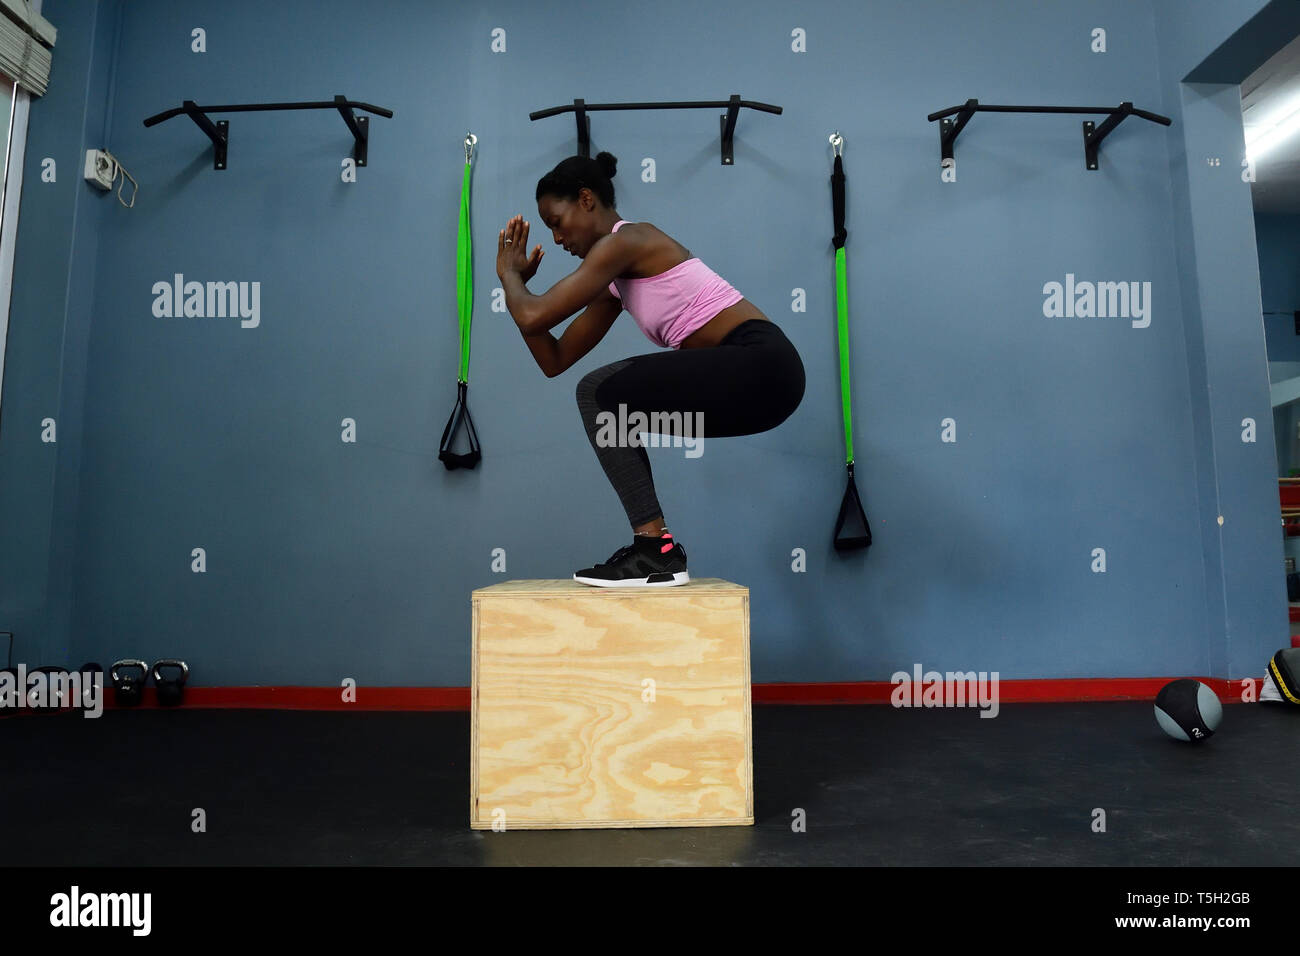 Mujer practicando en un gimnasio haciendo un cuadro saltar Foto de stock